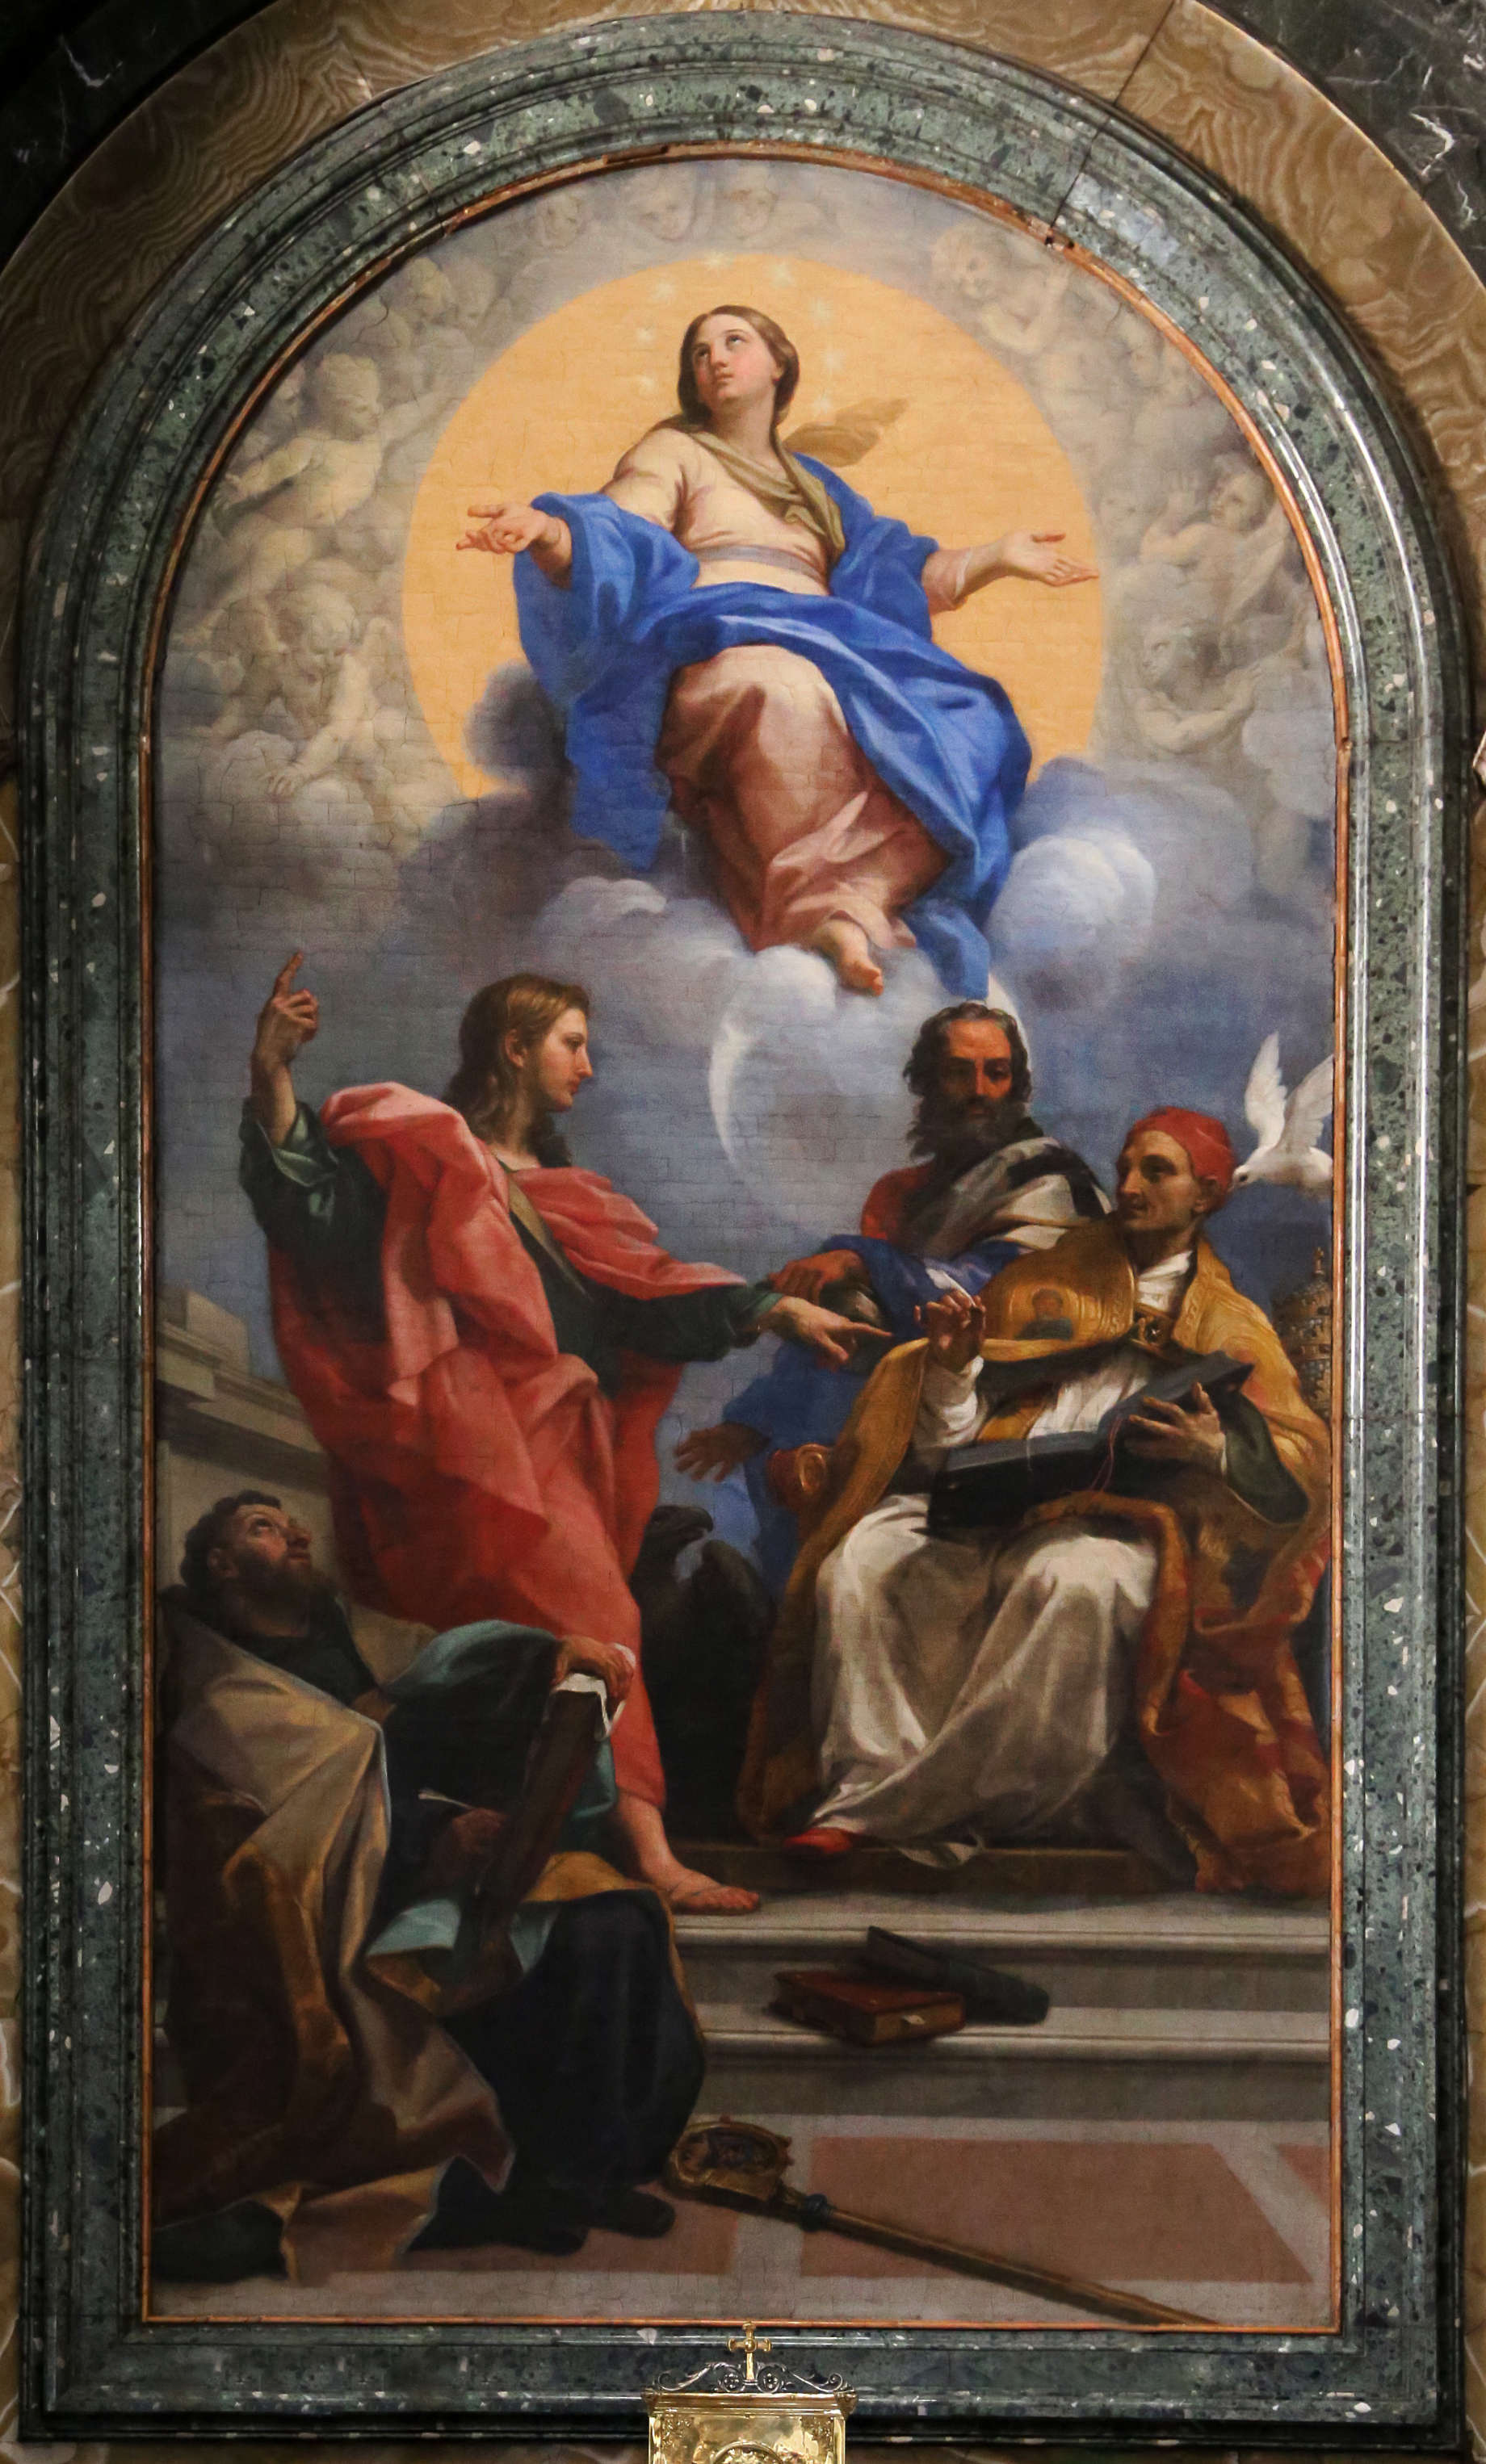 Carlo Maratta, Dispute on the Immaculate Conception (1689; oil on canvas; Rome, Santa Maria del Popolo, Cybo Chapel)